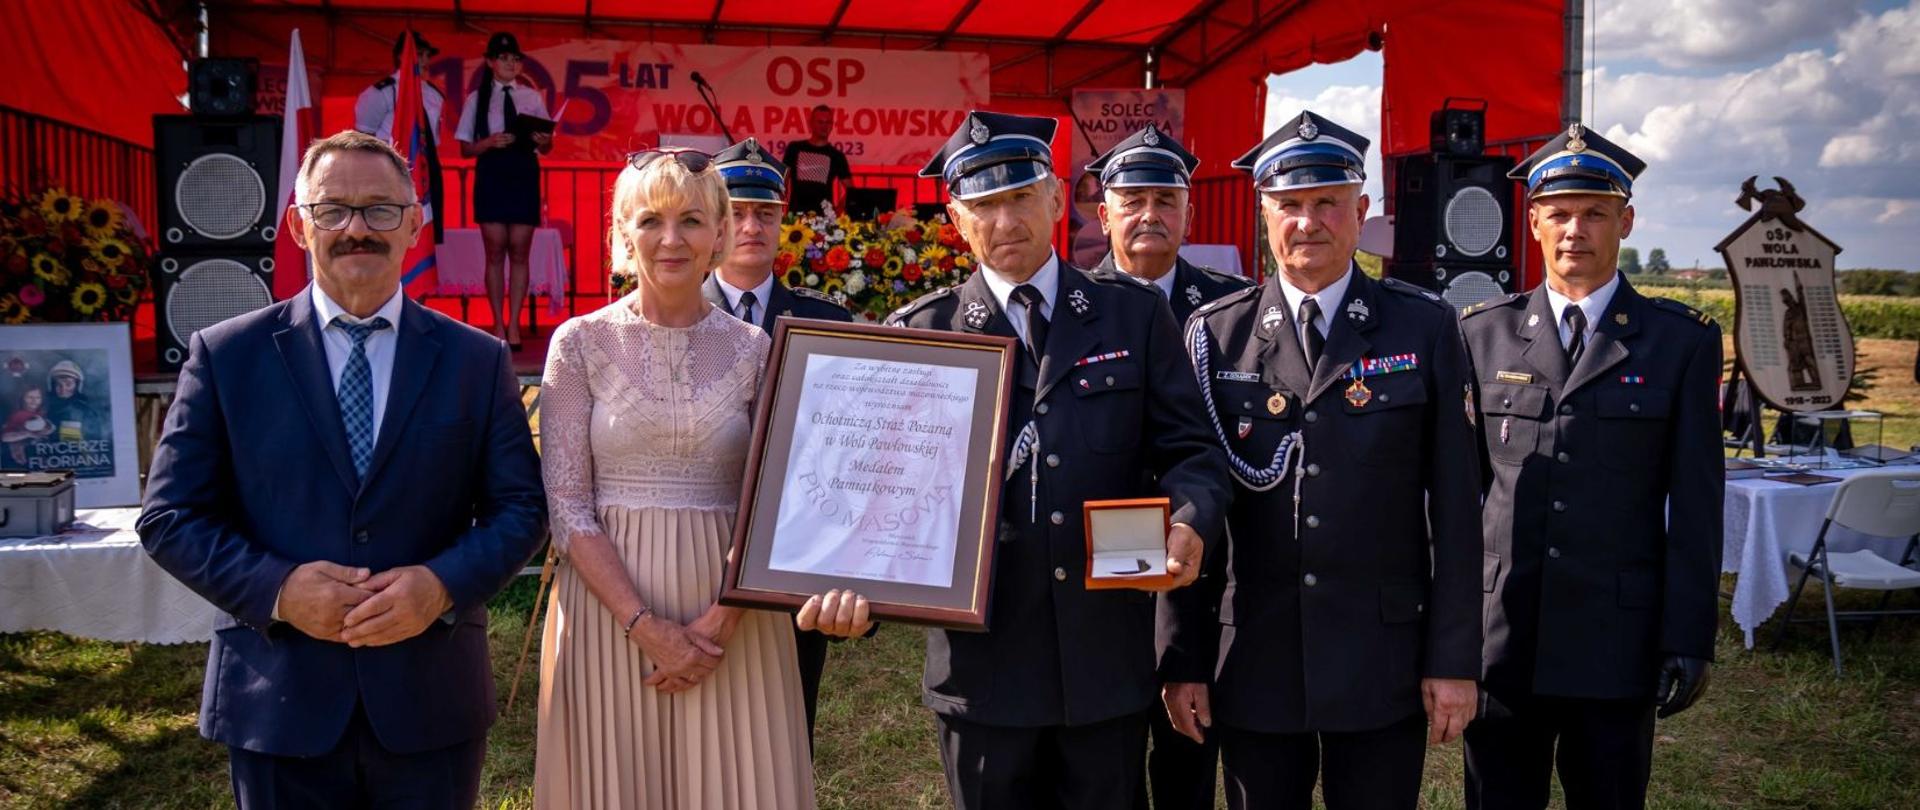 Starosta Lipski i Poseł na Sejm RP Anna Kwiecień w towarzystwie strażaków podczas uroczystości.